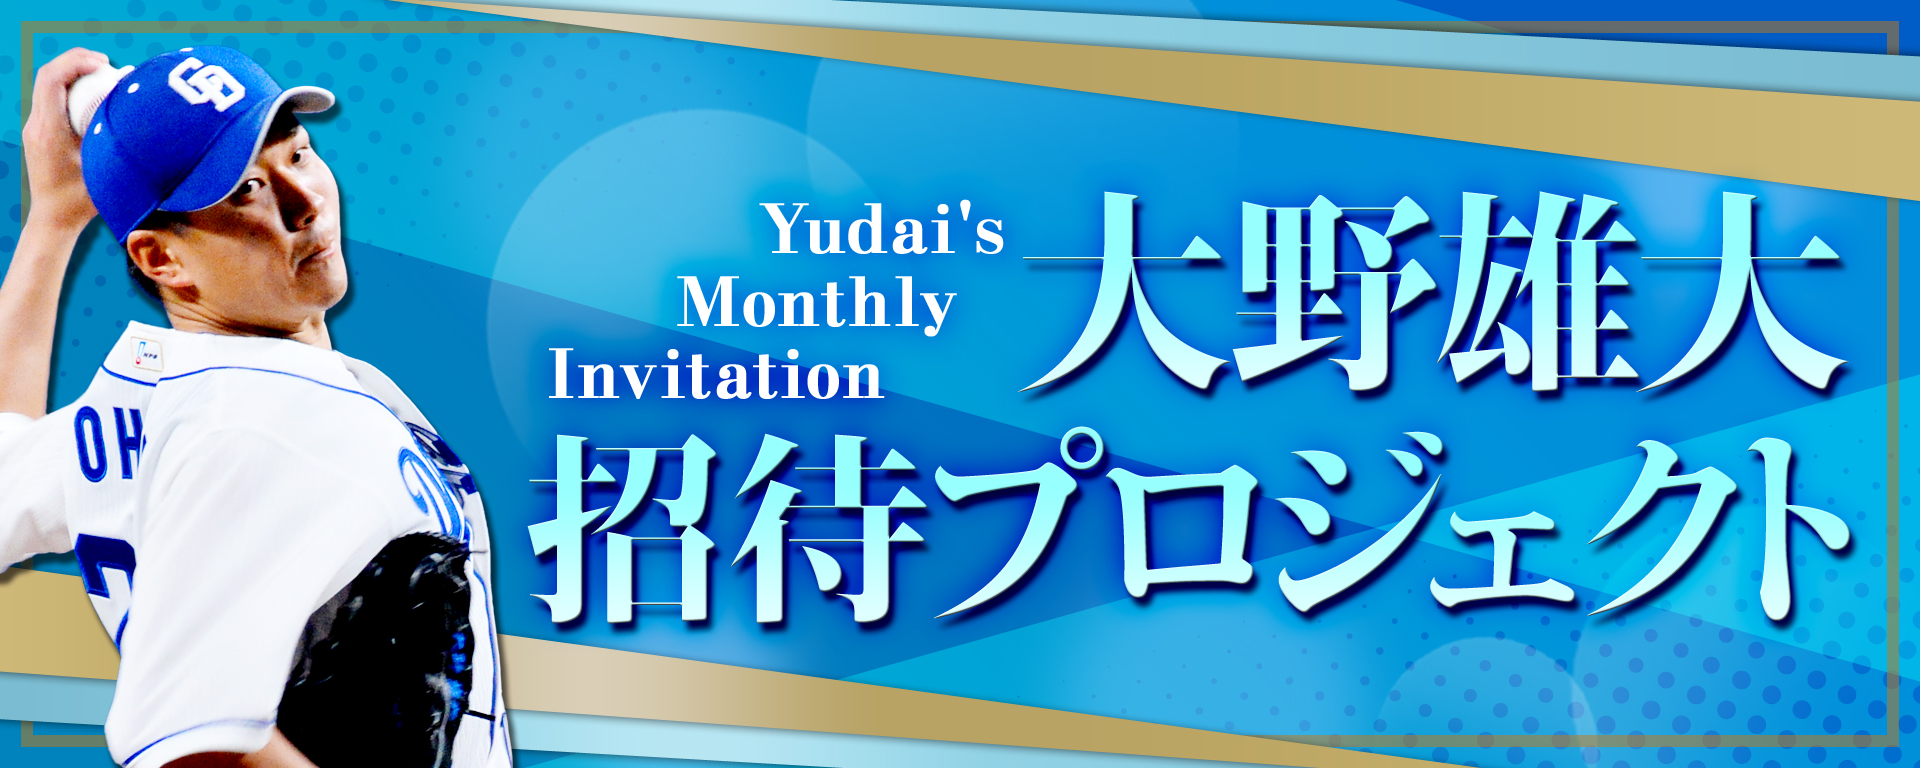 中日ドラゴンズ オフィシャルウェブサイト ドラゴンズニュース 大野雄大 招待プロジェクト Yudai S Monthly Invitation